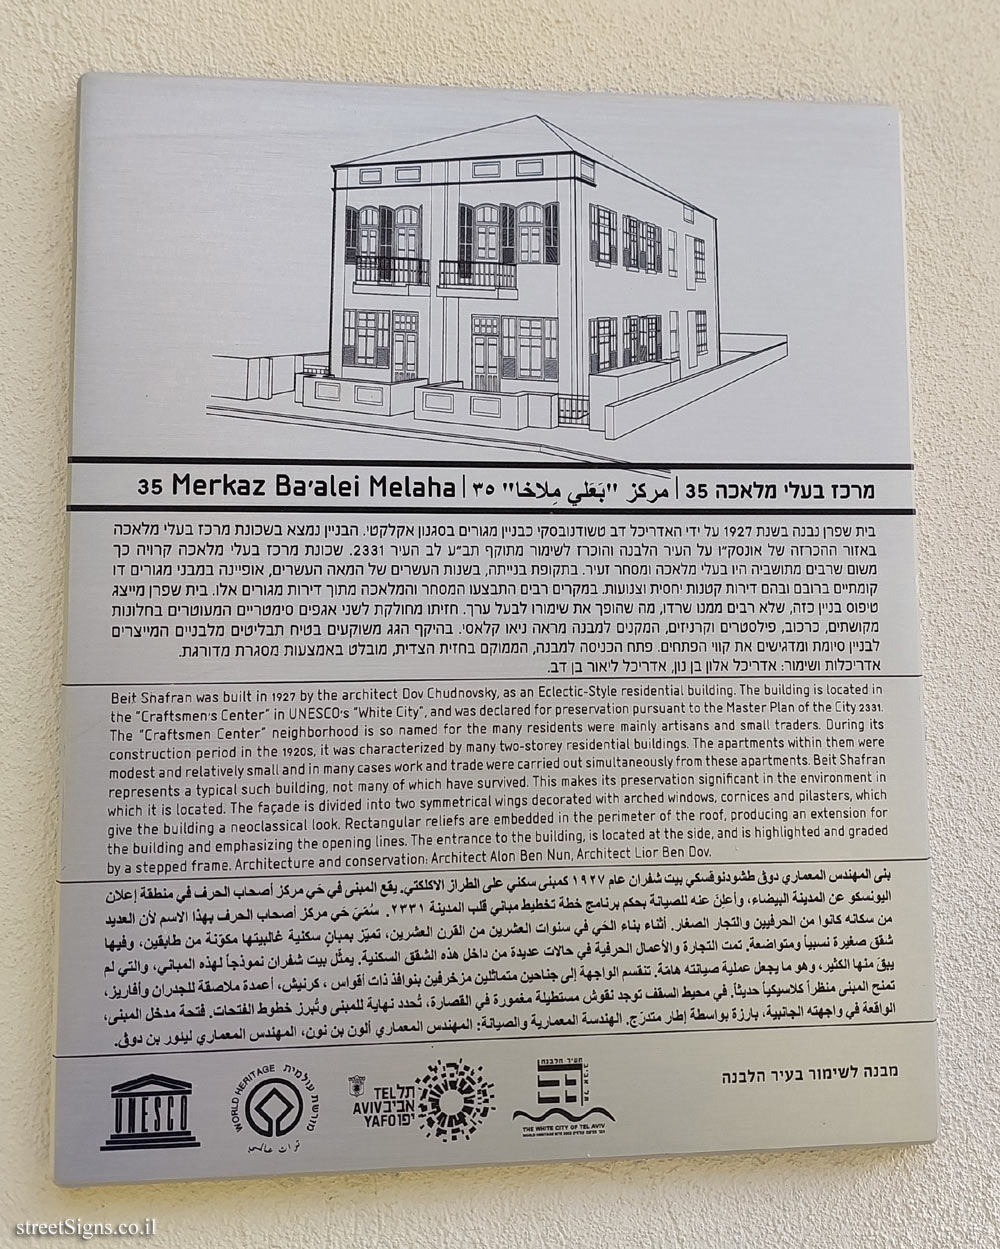 Tel Aviv - buildings for conservation - 35 Merkaz Ba’alei Melaha